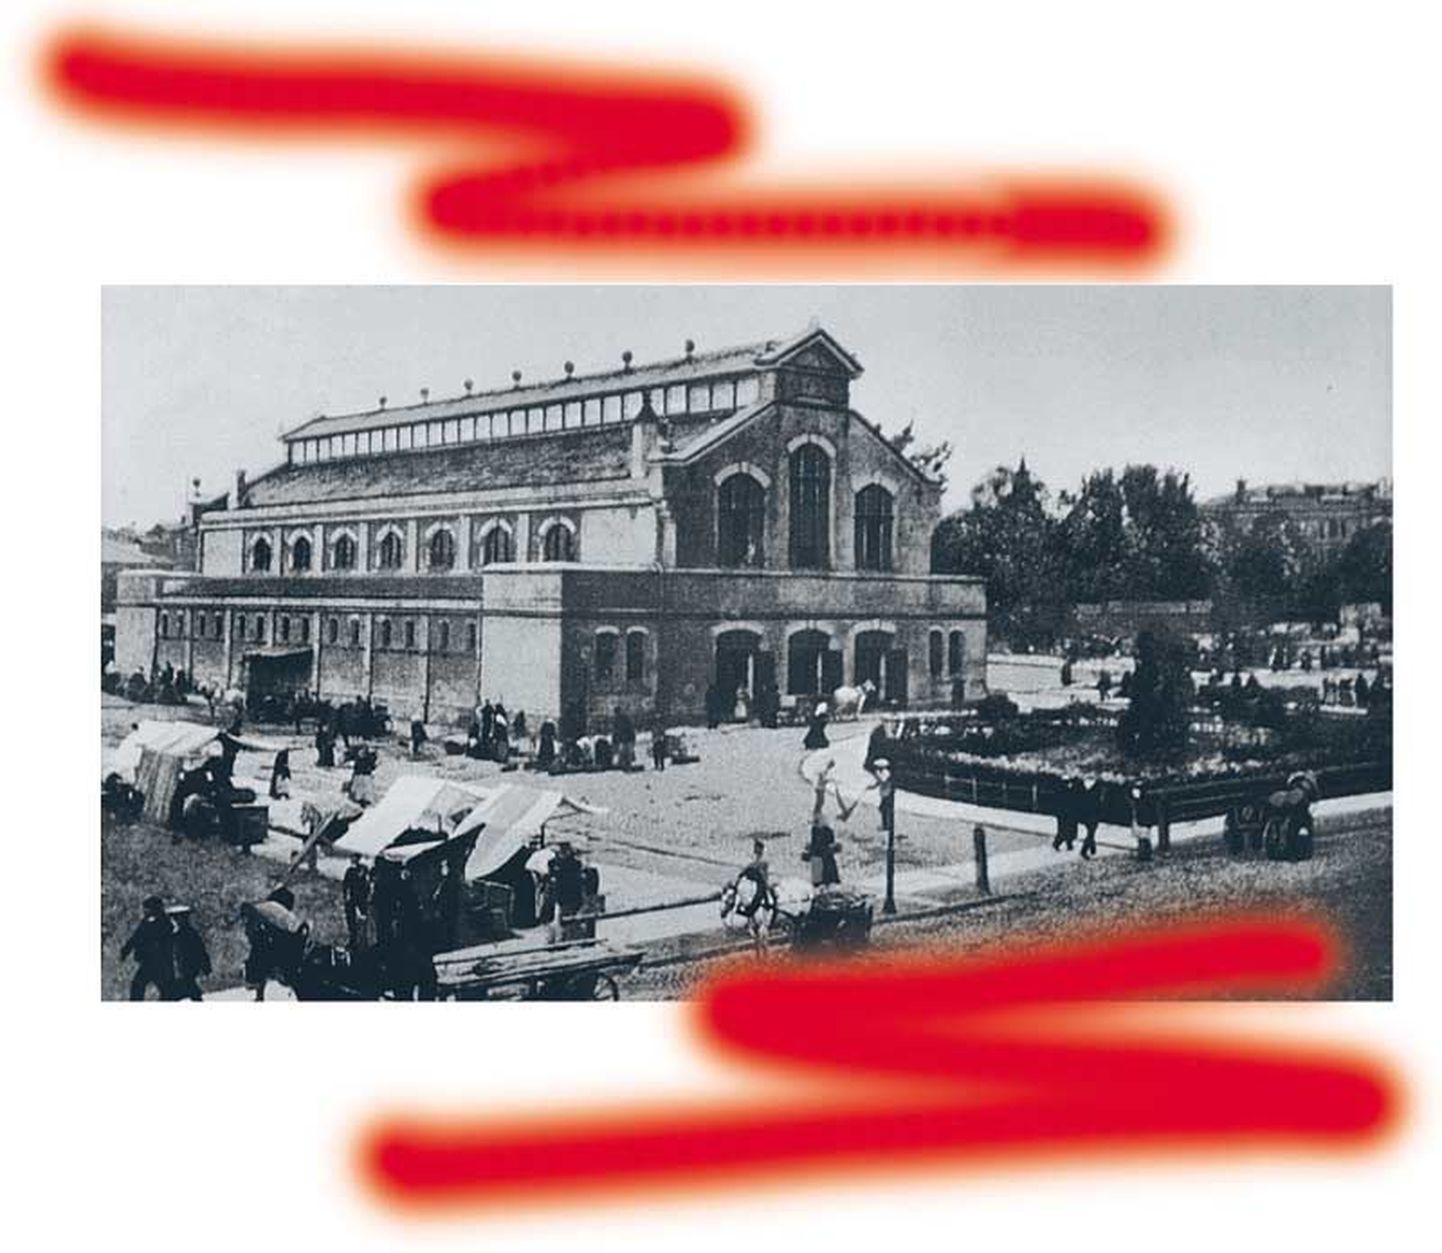 Uue turu väljak, kus 1905. aasta 16. oktoobril tulistasid tsaariarmee sõdurid miitingulisi.